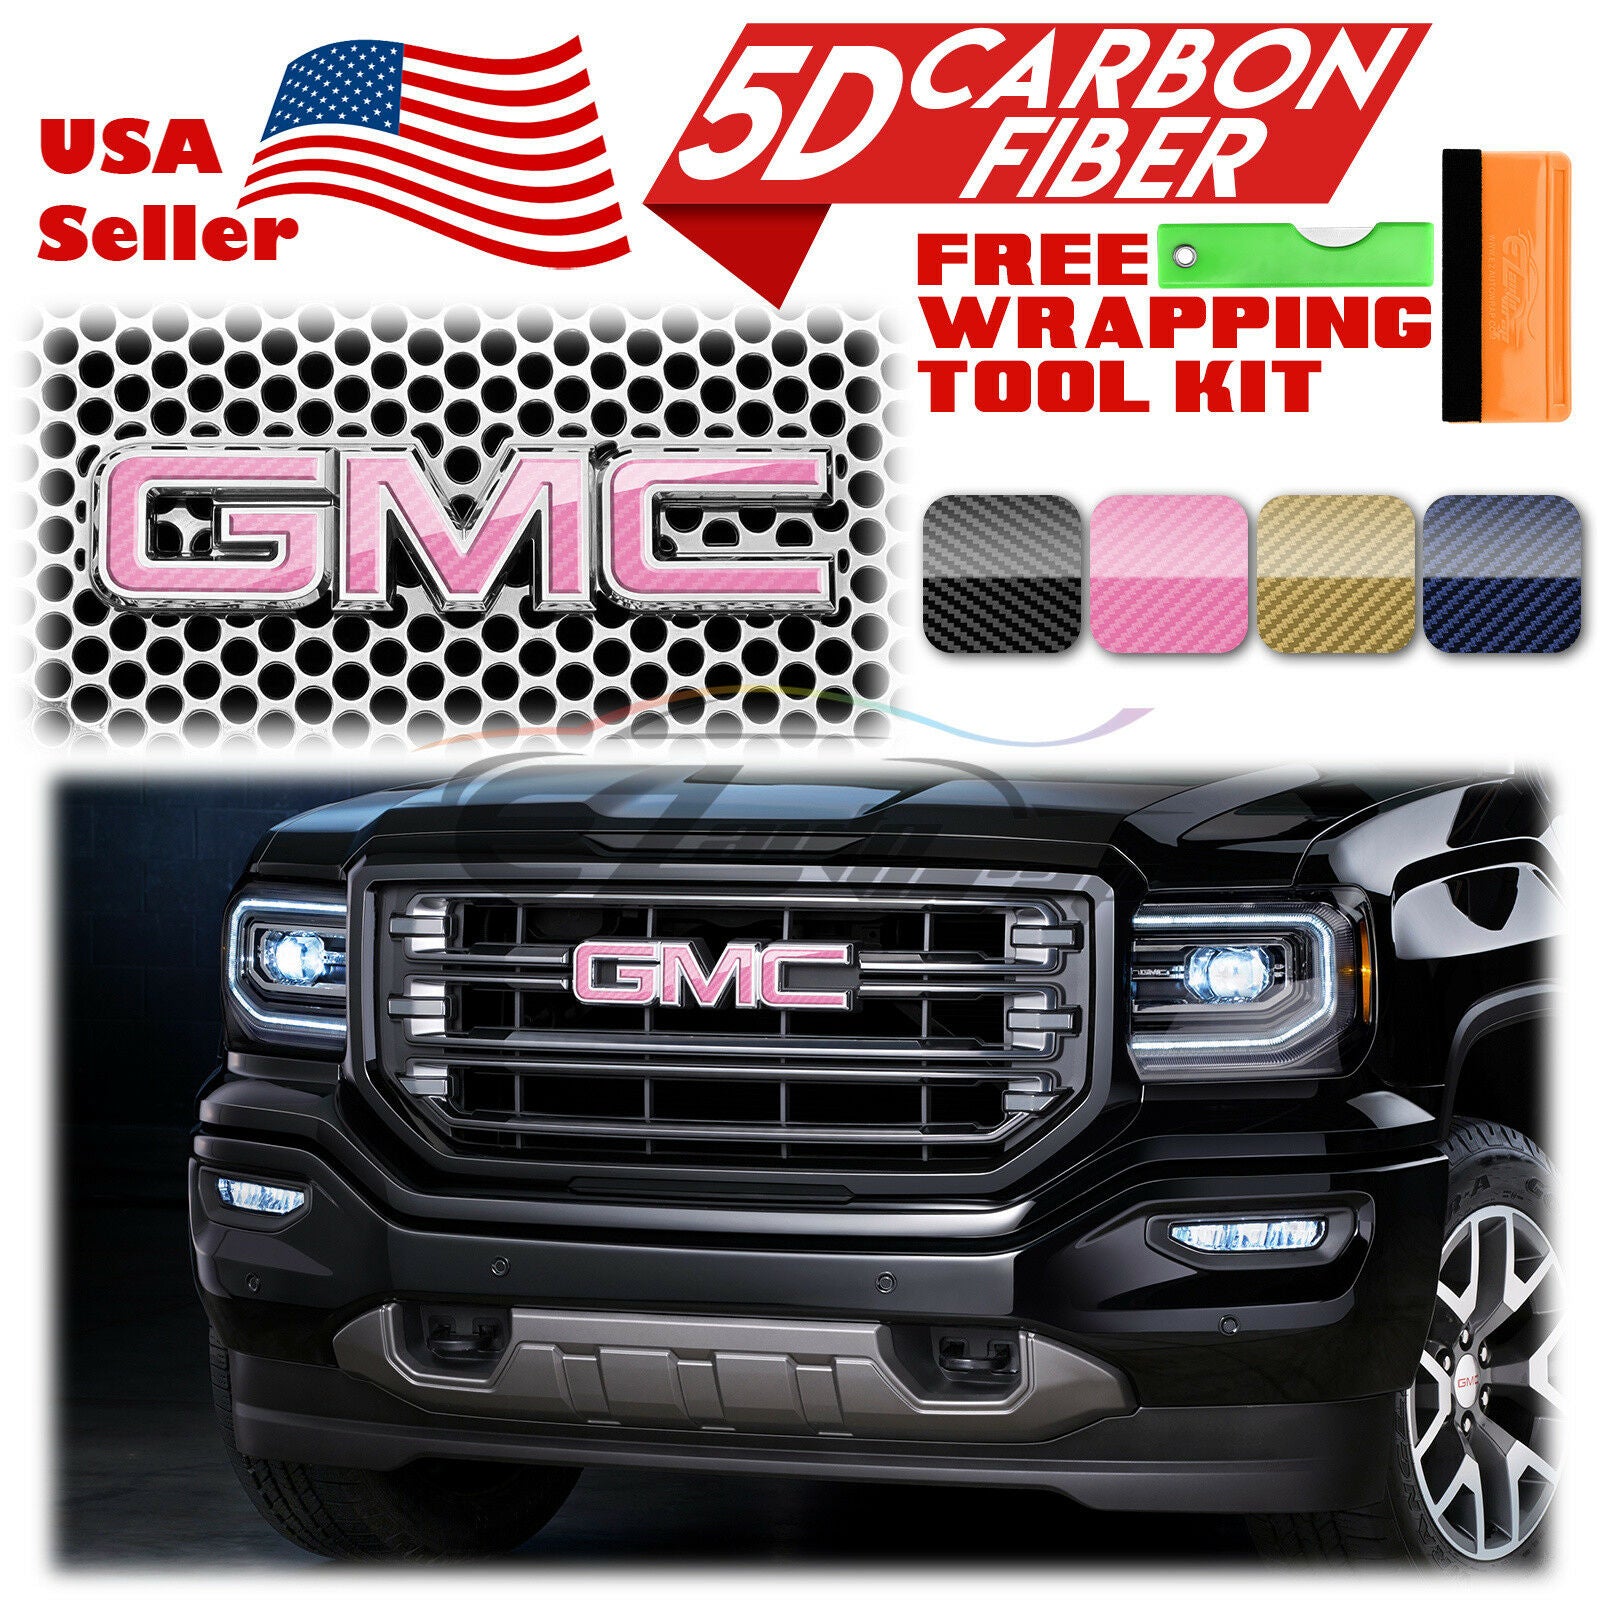 6pcs 4"x6" 5D Carbon Fiber GMC Emblem Overlay